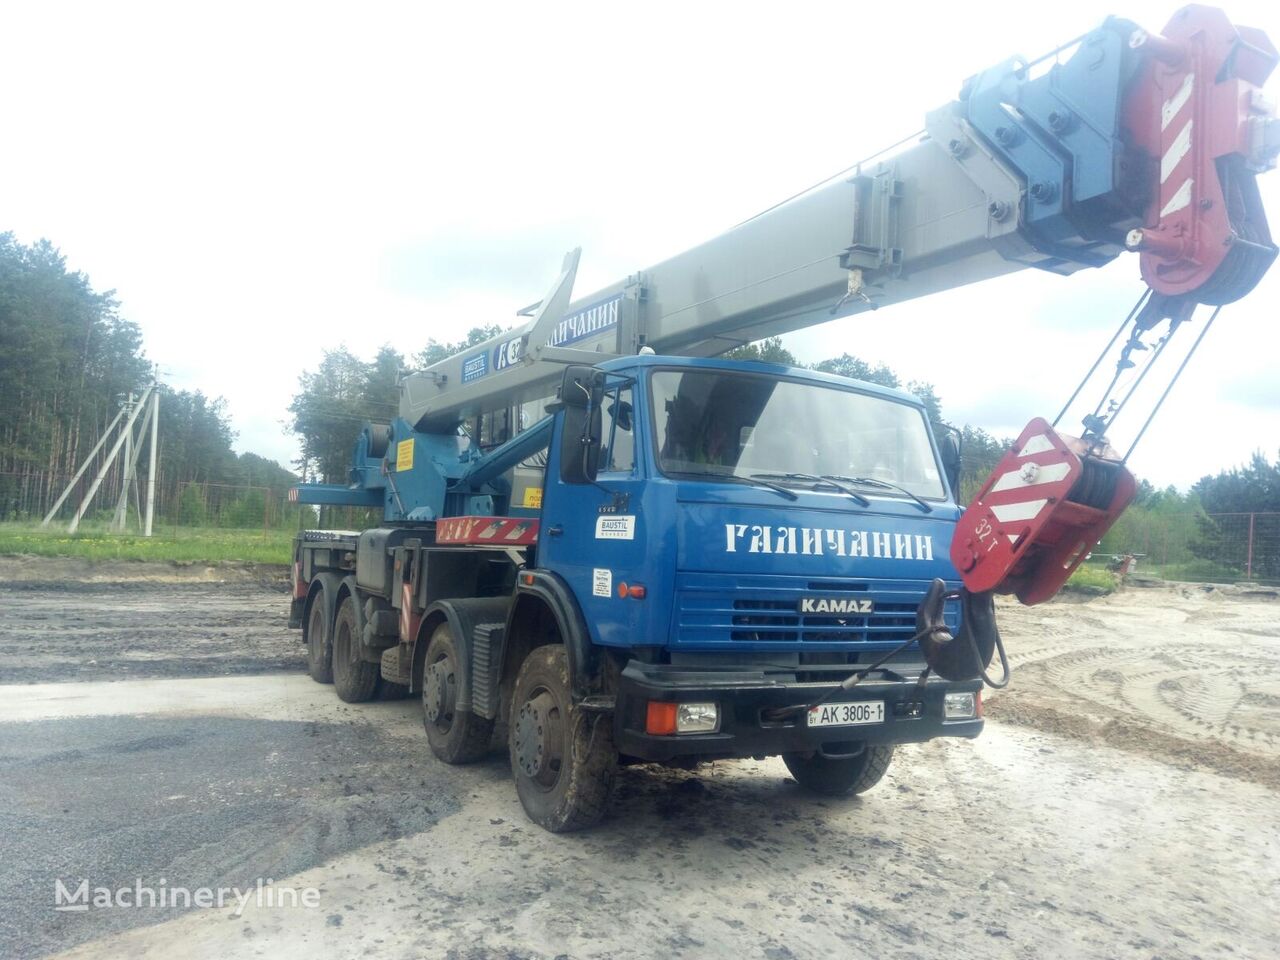 Galichanin  on chassis KAMAZ KS-55729 mobile crane